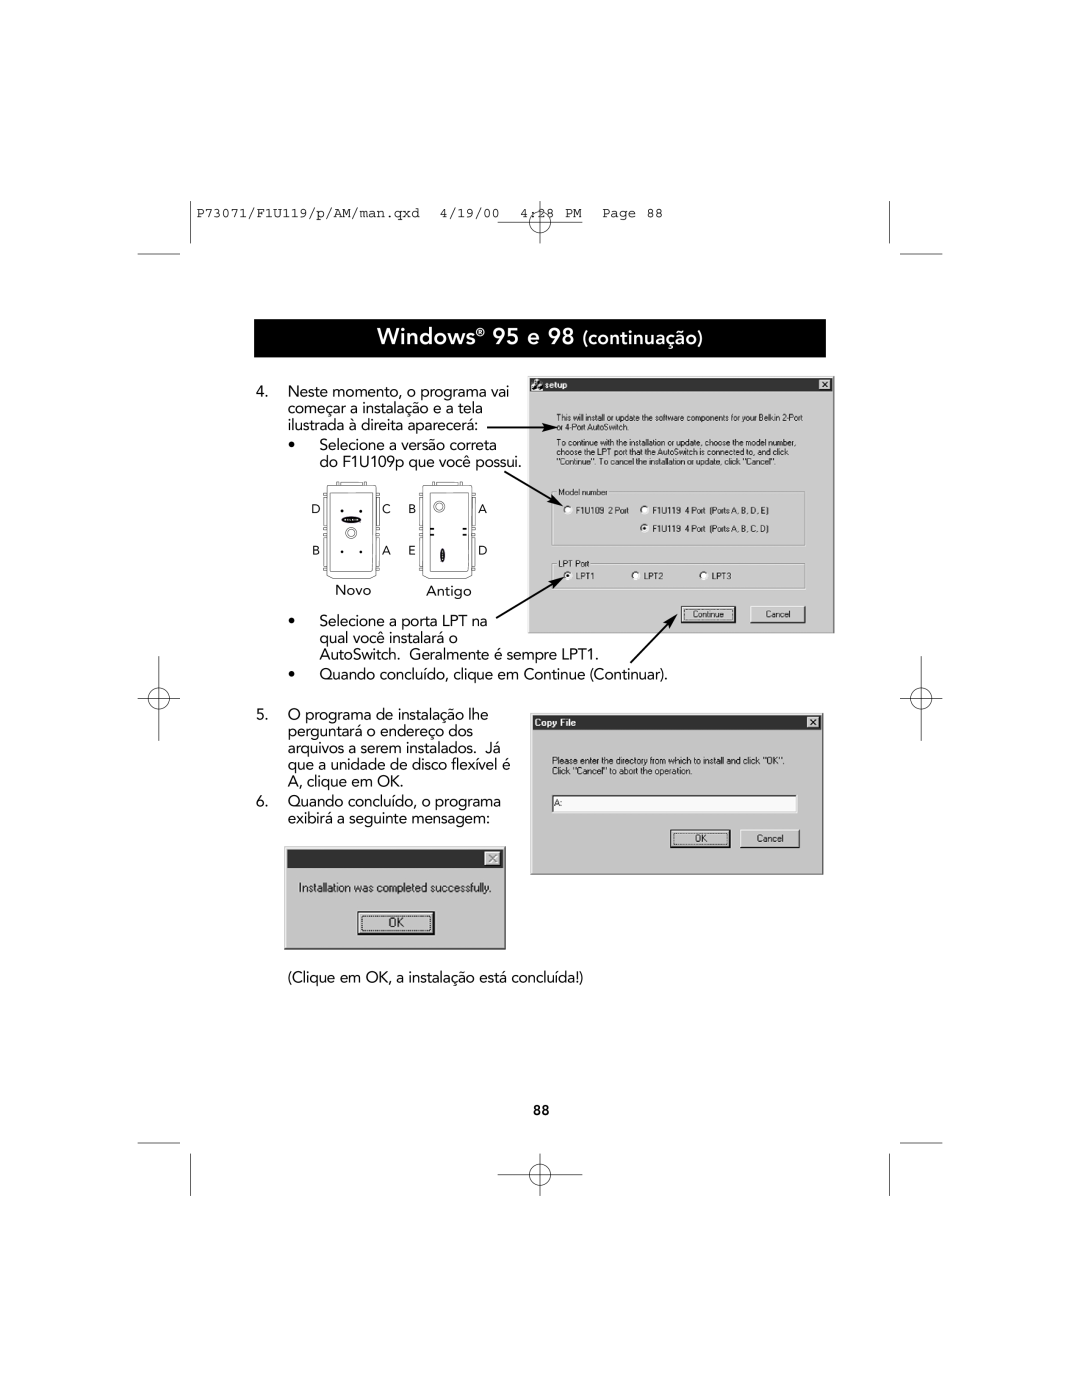 Belkin F1U119 user manual Windows 95 e 98 continuação 